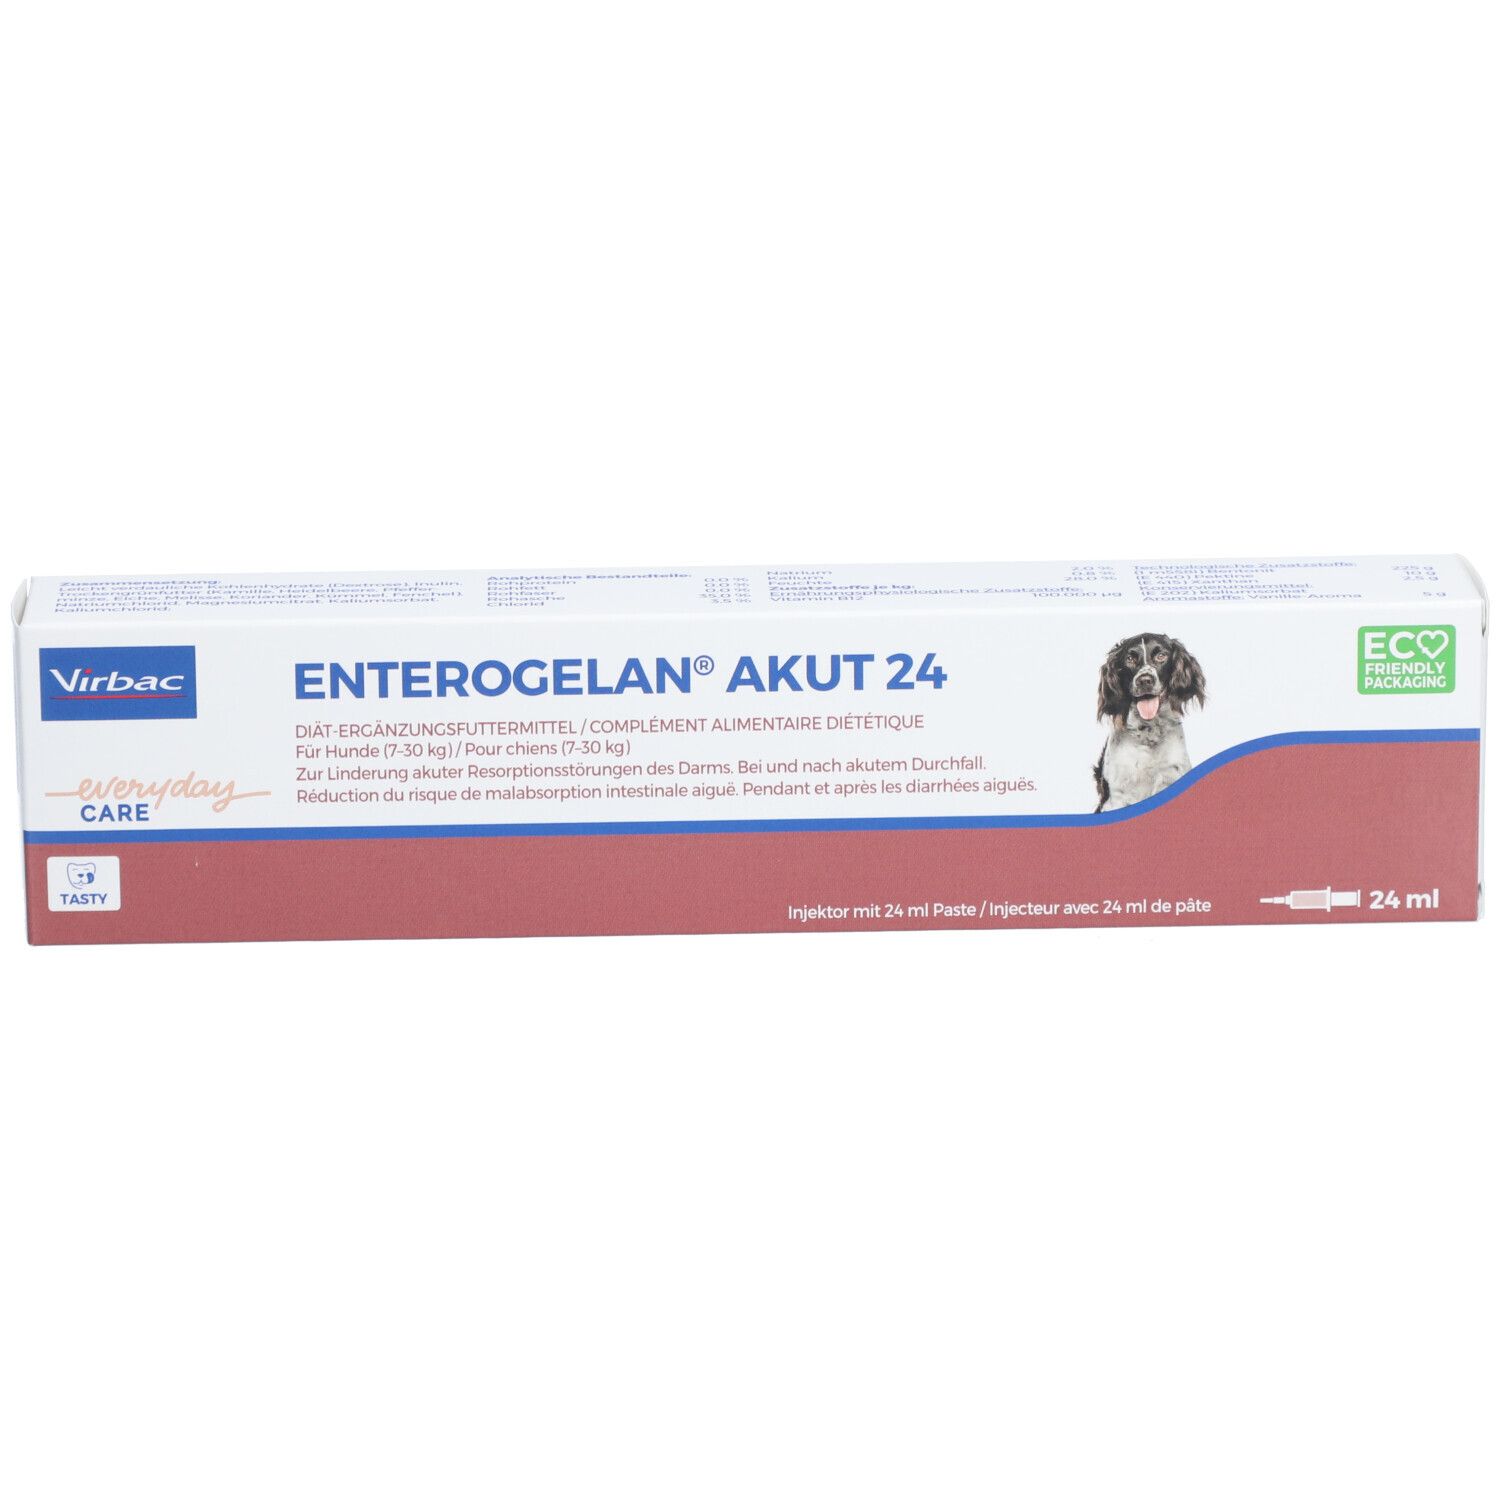 Enterogelan® akut 24